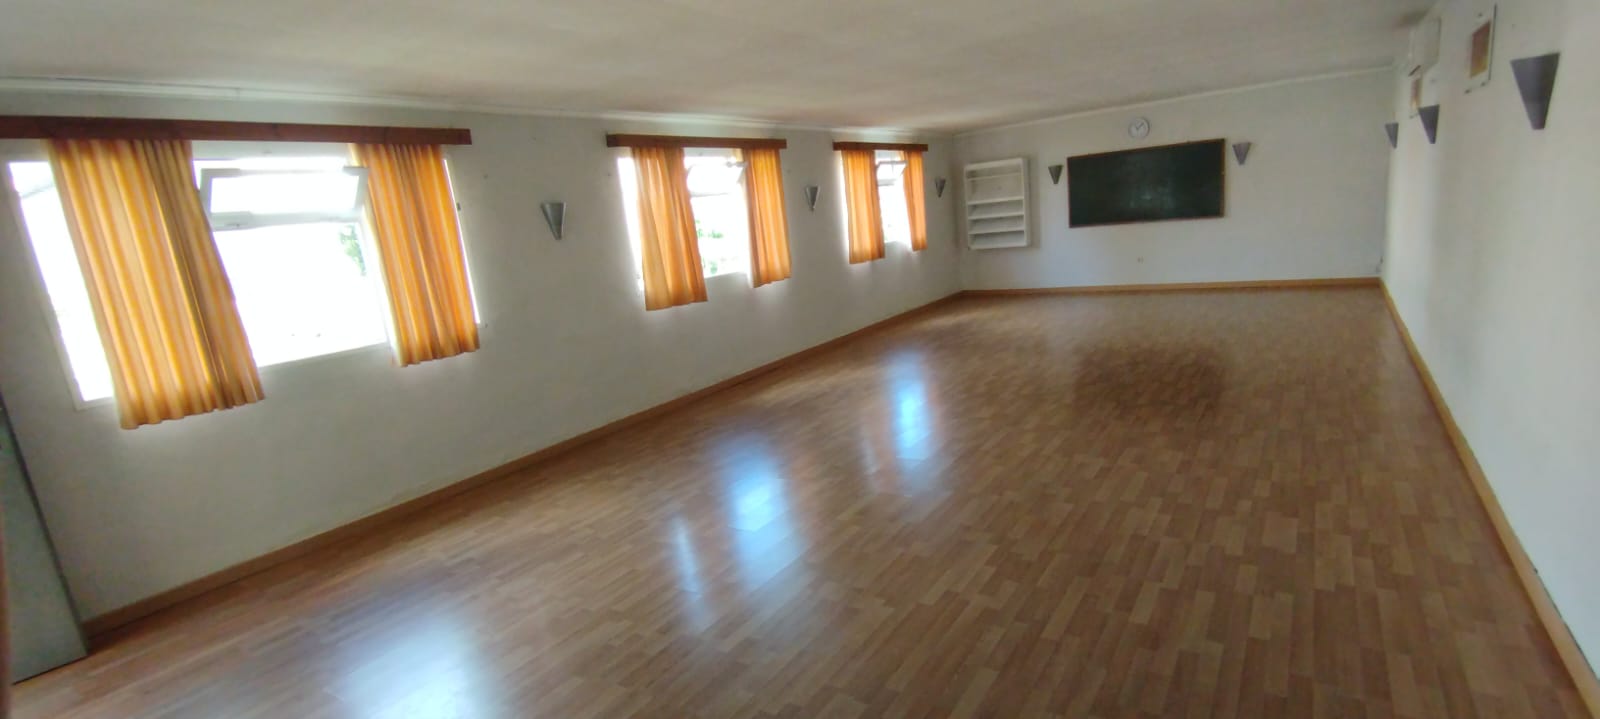 Interior de la sala pequeña (sala 1 de 60 m2)